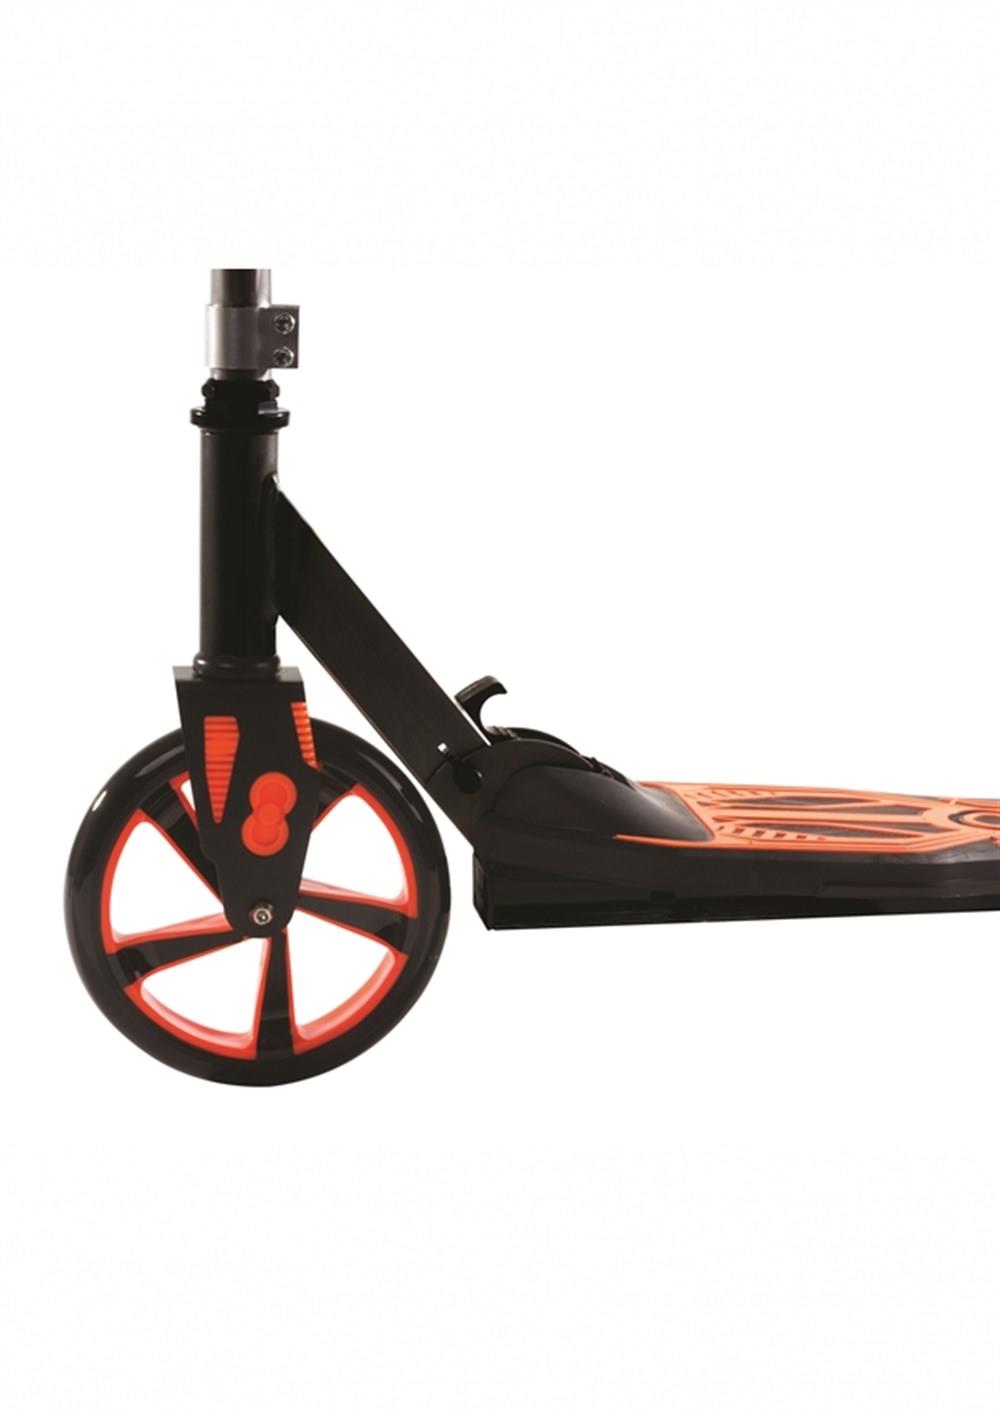 Cool Wheels Katlanabilir Scooter Turuncu